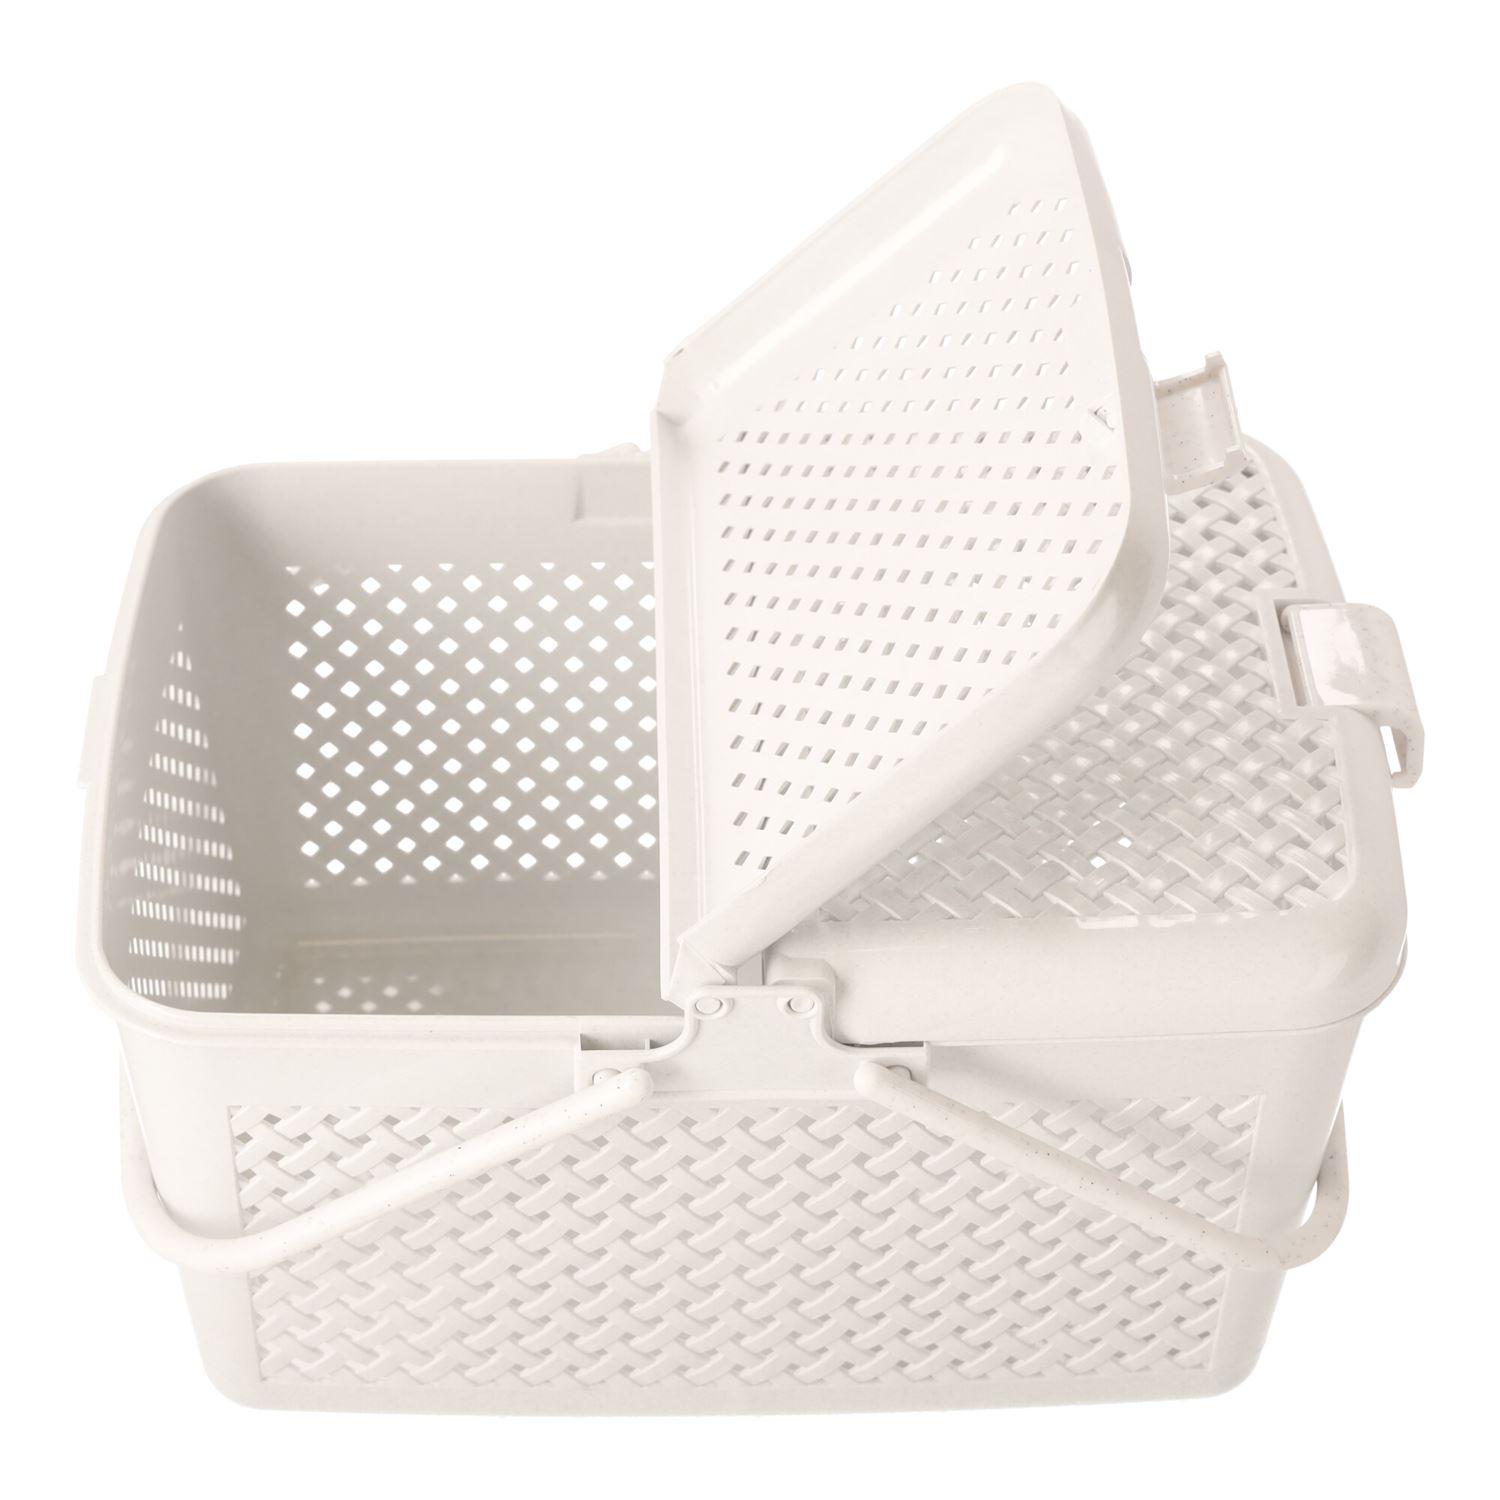 Rectangular picnic basket lockable white, POLISH PRODUCT